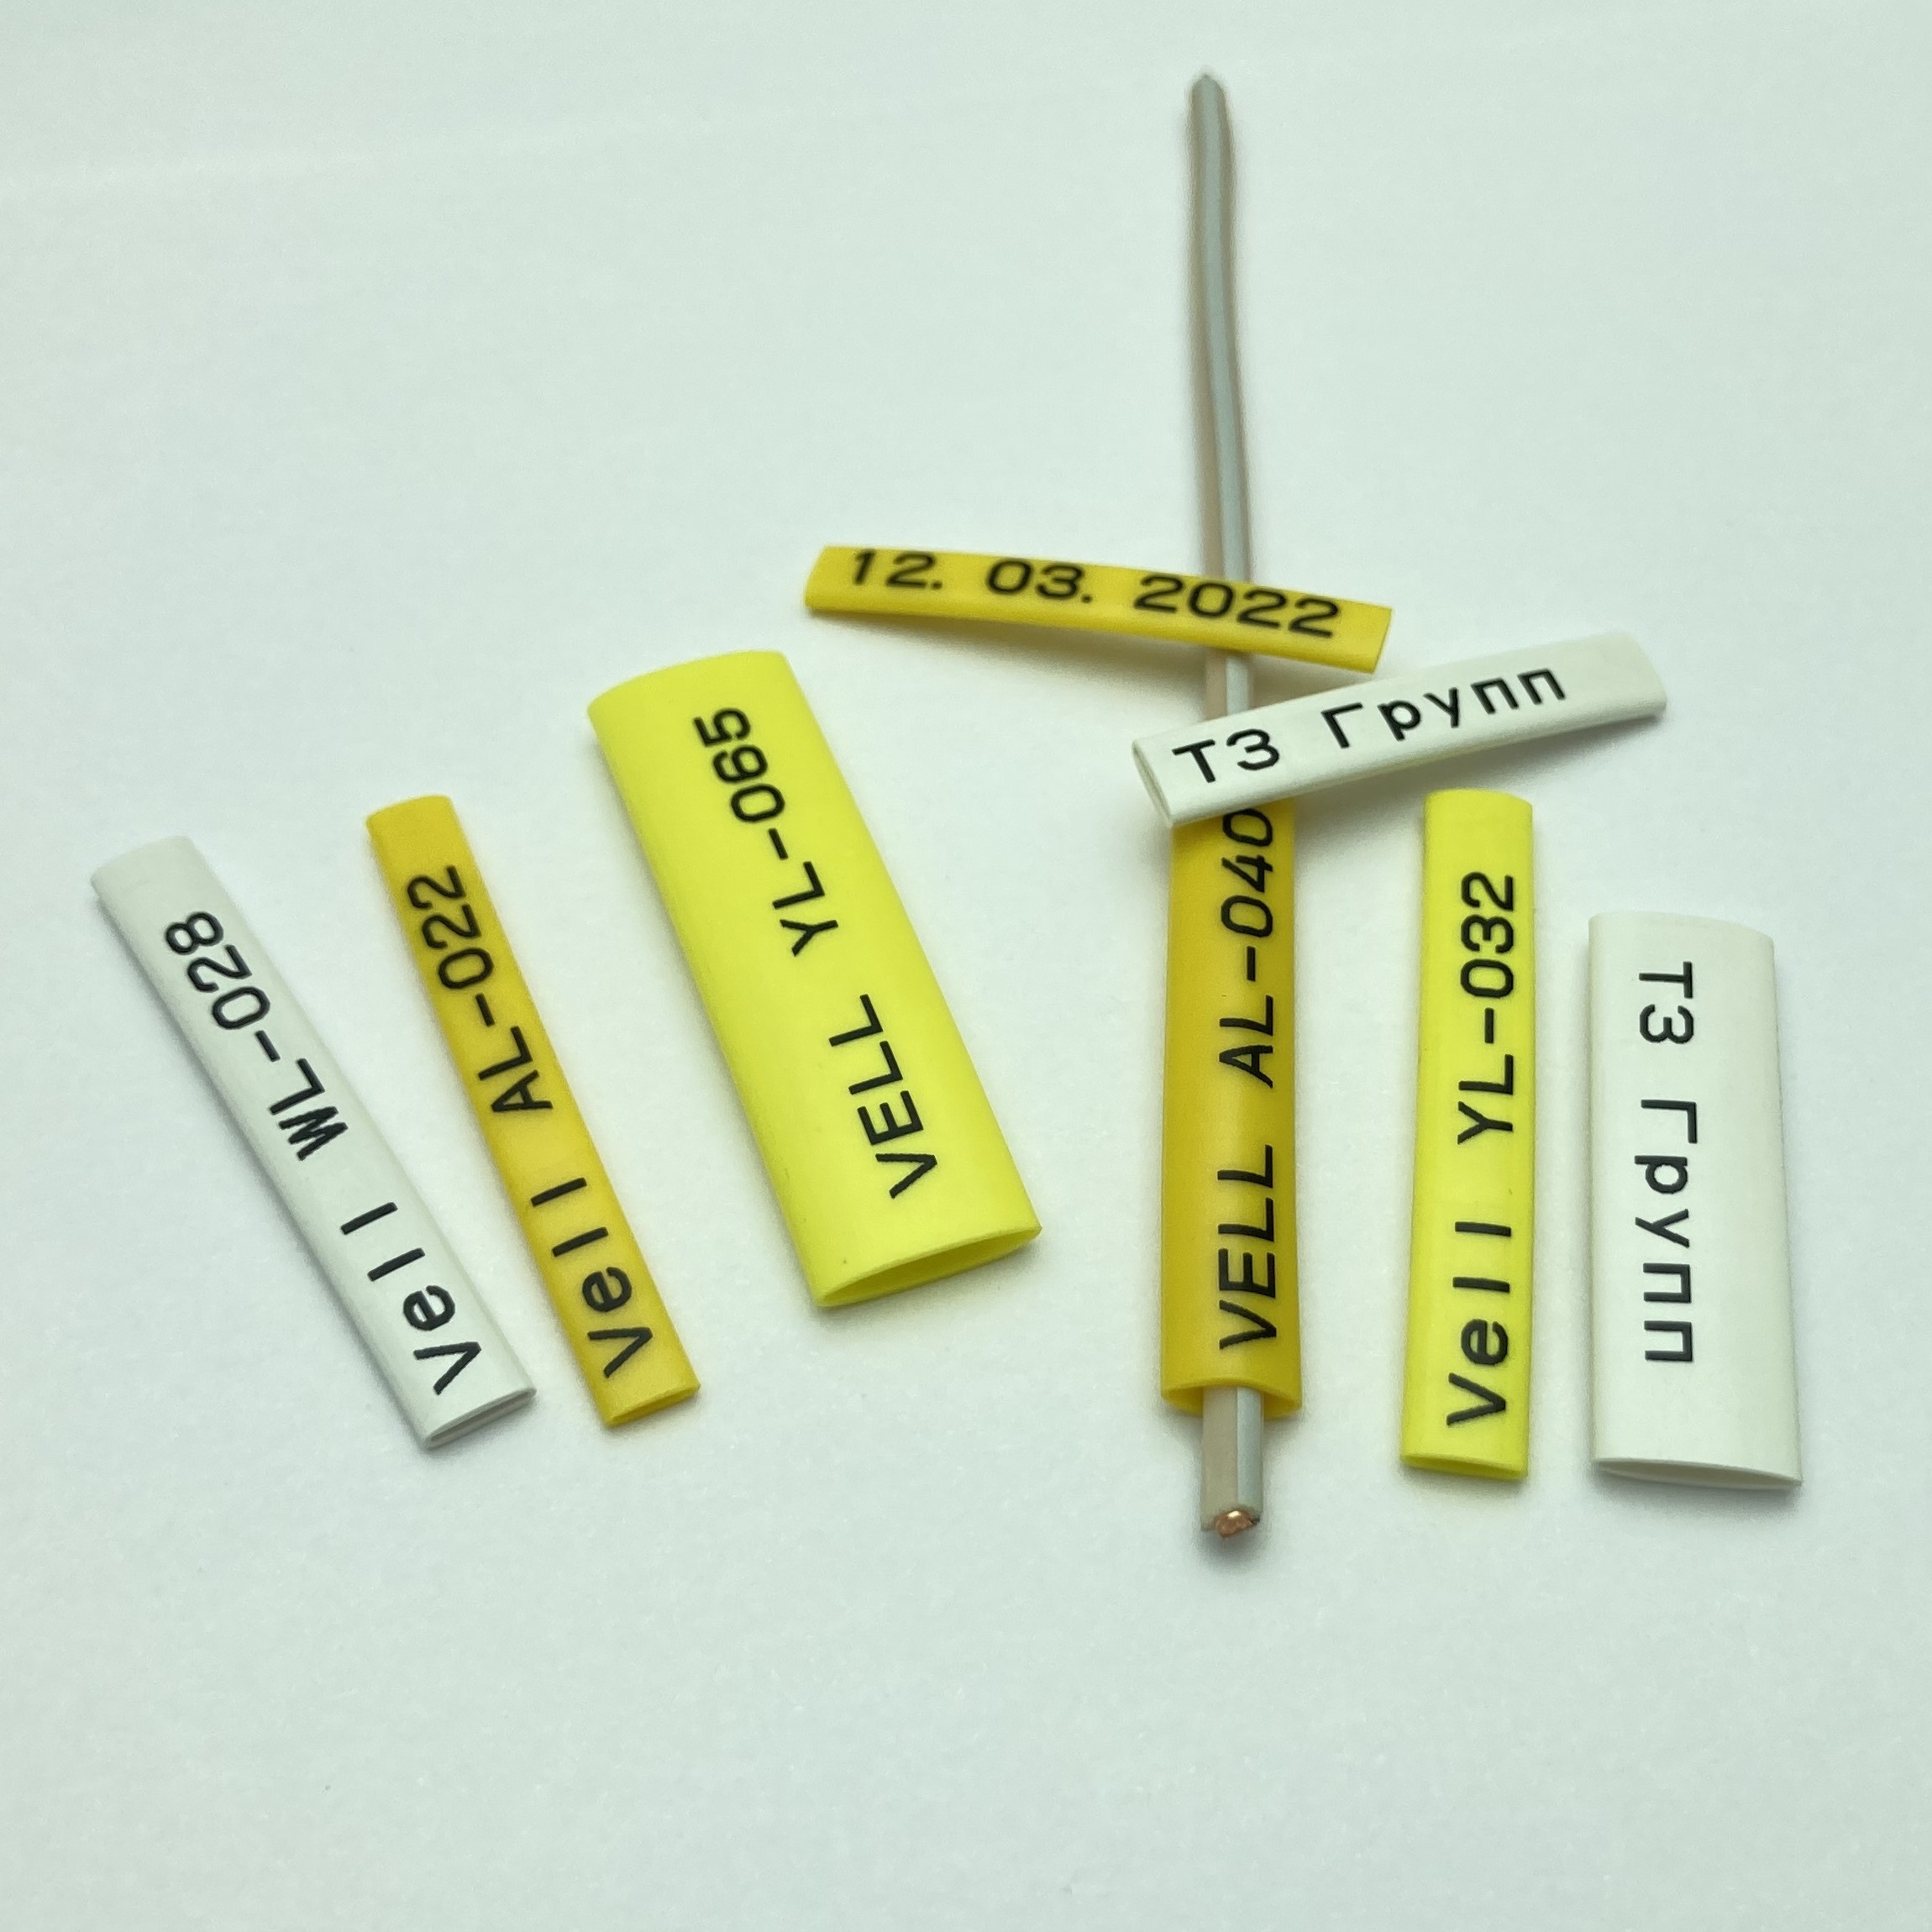 Фото Профиль ПВХ овальный Vell AL-025 для маркировки проводов, Ø 2,5 мм, 200 метров, янтарно-желтый, аналог Partex PO-03 (самозатухающий) {590387} (3)